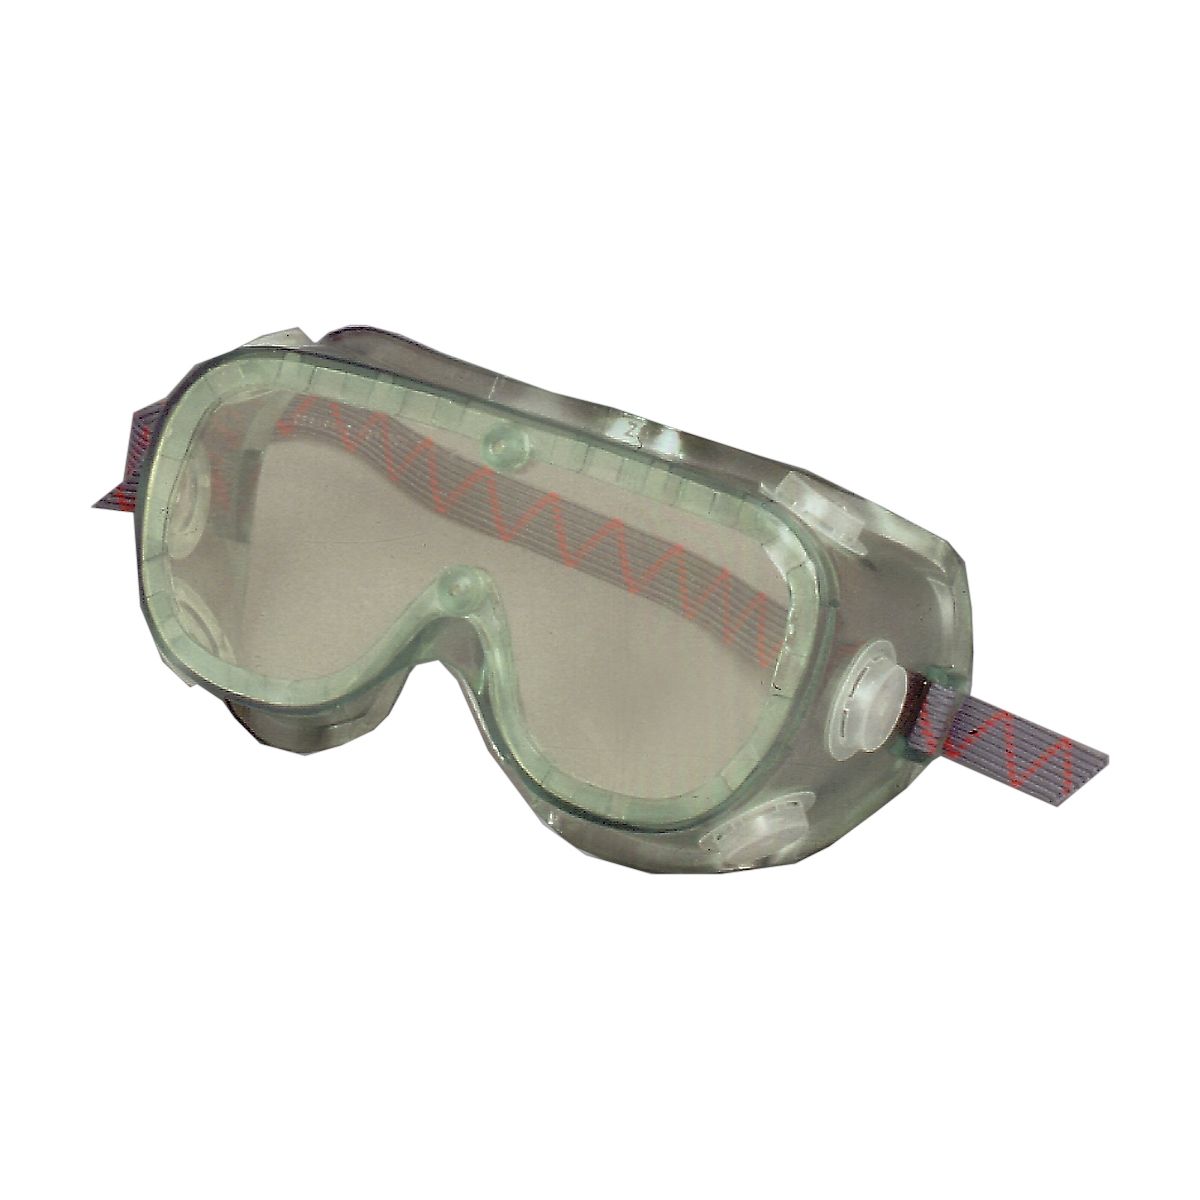 UV Absorbing Goggles - Heavy Duty